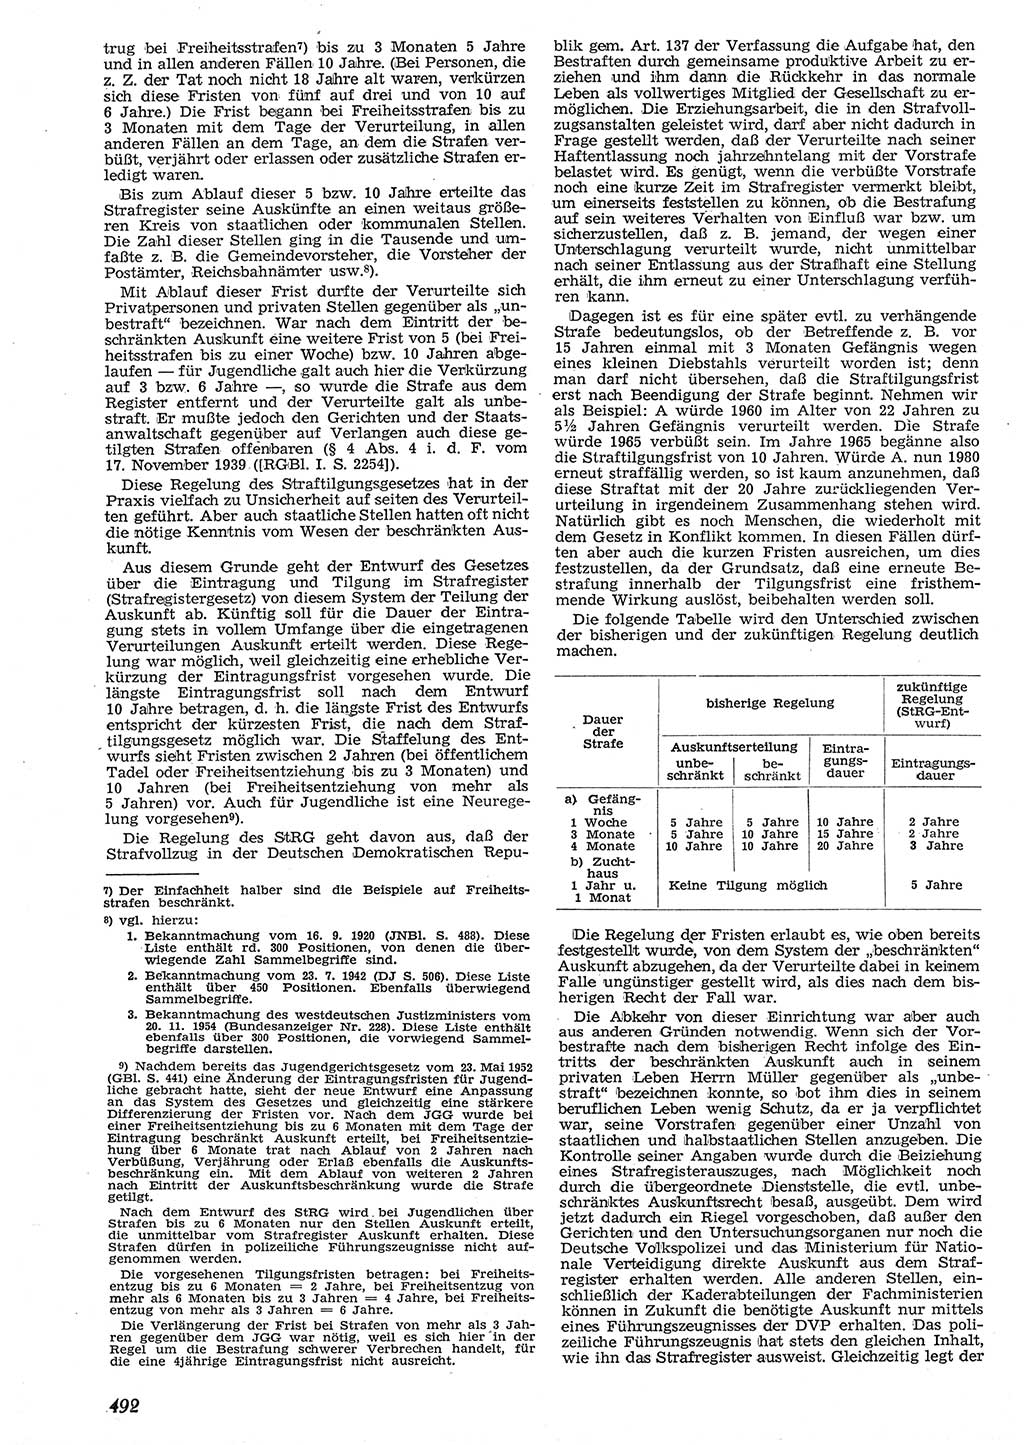 Neue Justiz (NJ), Zeitschrift für Recht und Rechtswissenschaft [Deutsche Demokratische Republik (DDR)], 10. Jahrgang 1956, Seite 492 (NJ DDR 1956, S. 492)